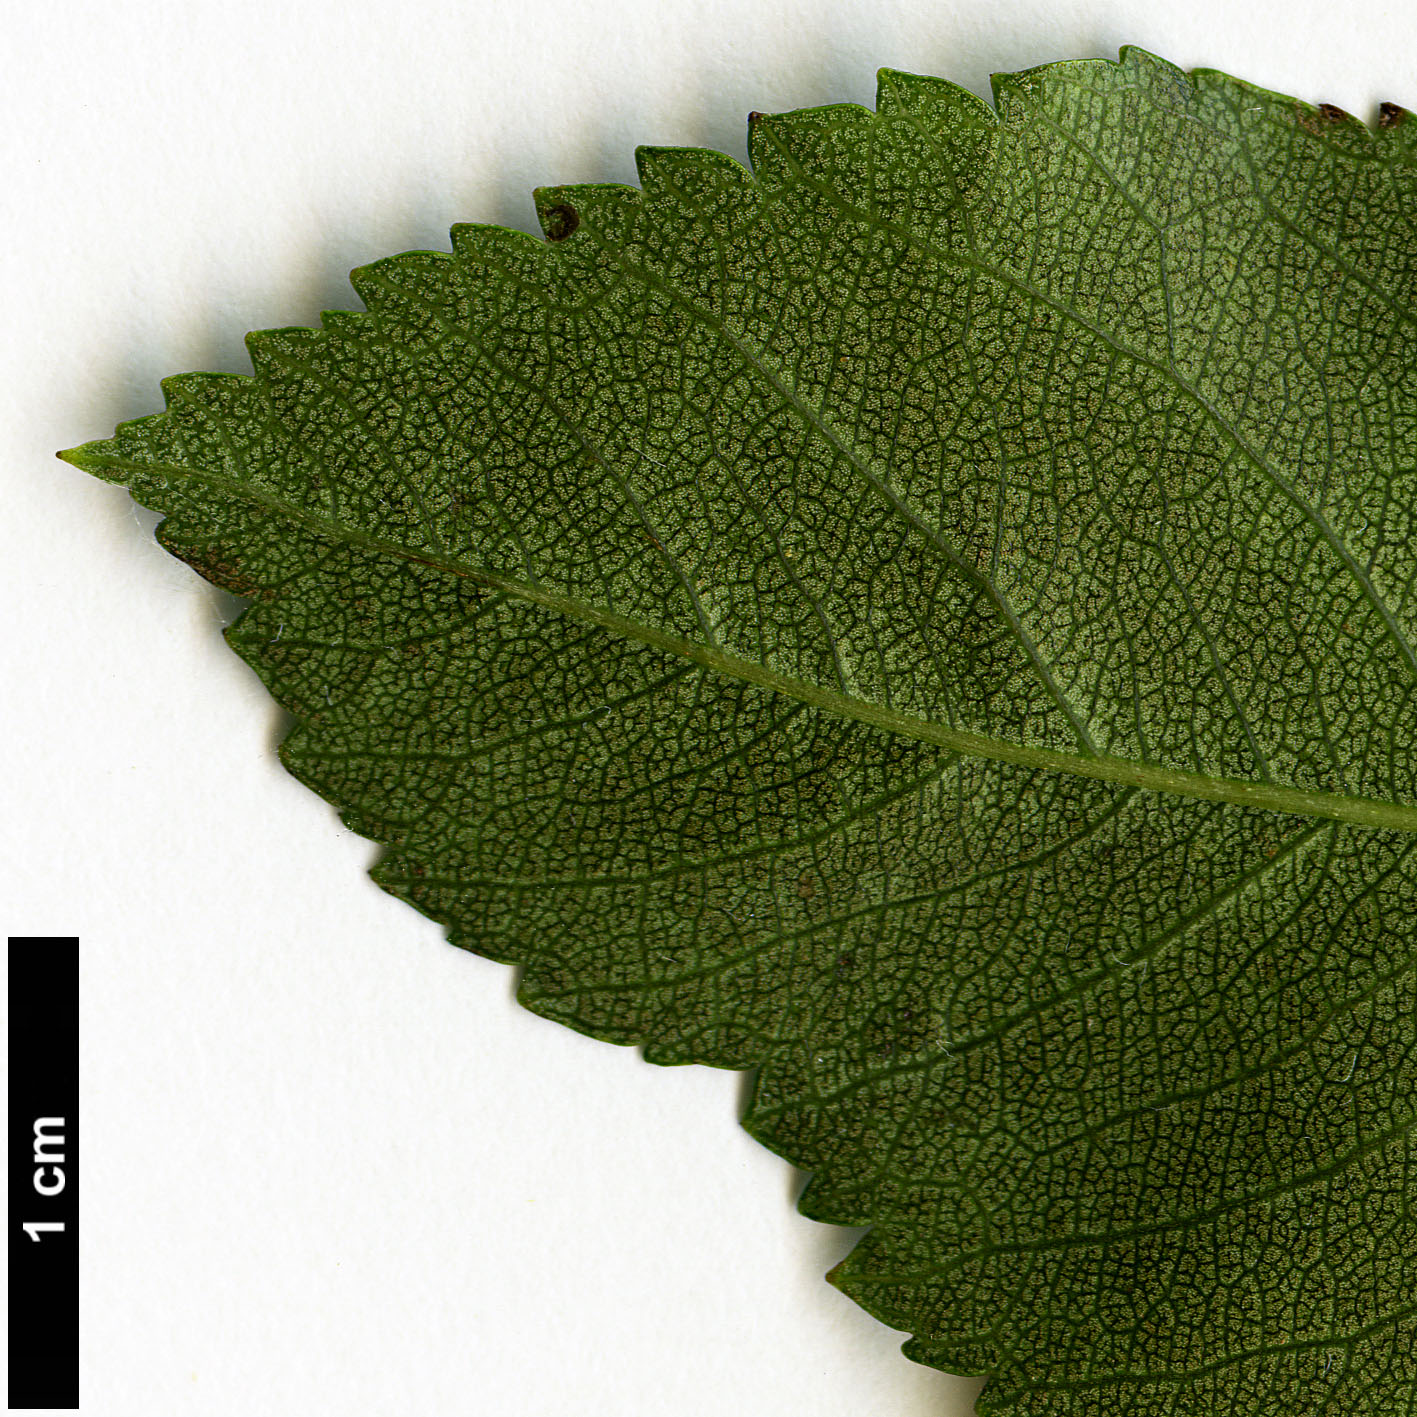 High resolution image: Family: Rosaceae - Genus: Crataegus - Taxon: crus-galli - SpeciesSub: 'Inermis'